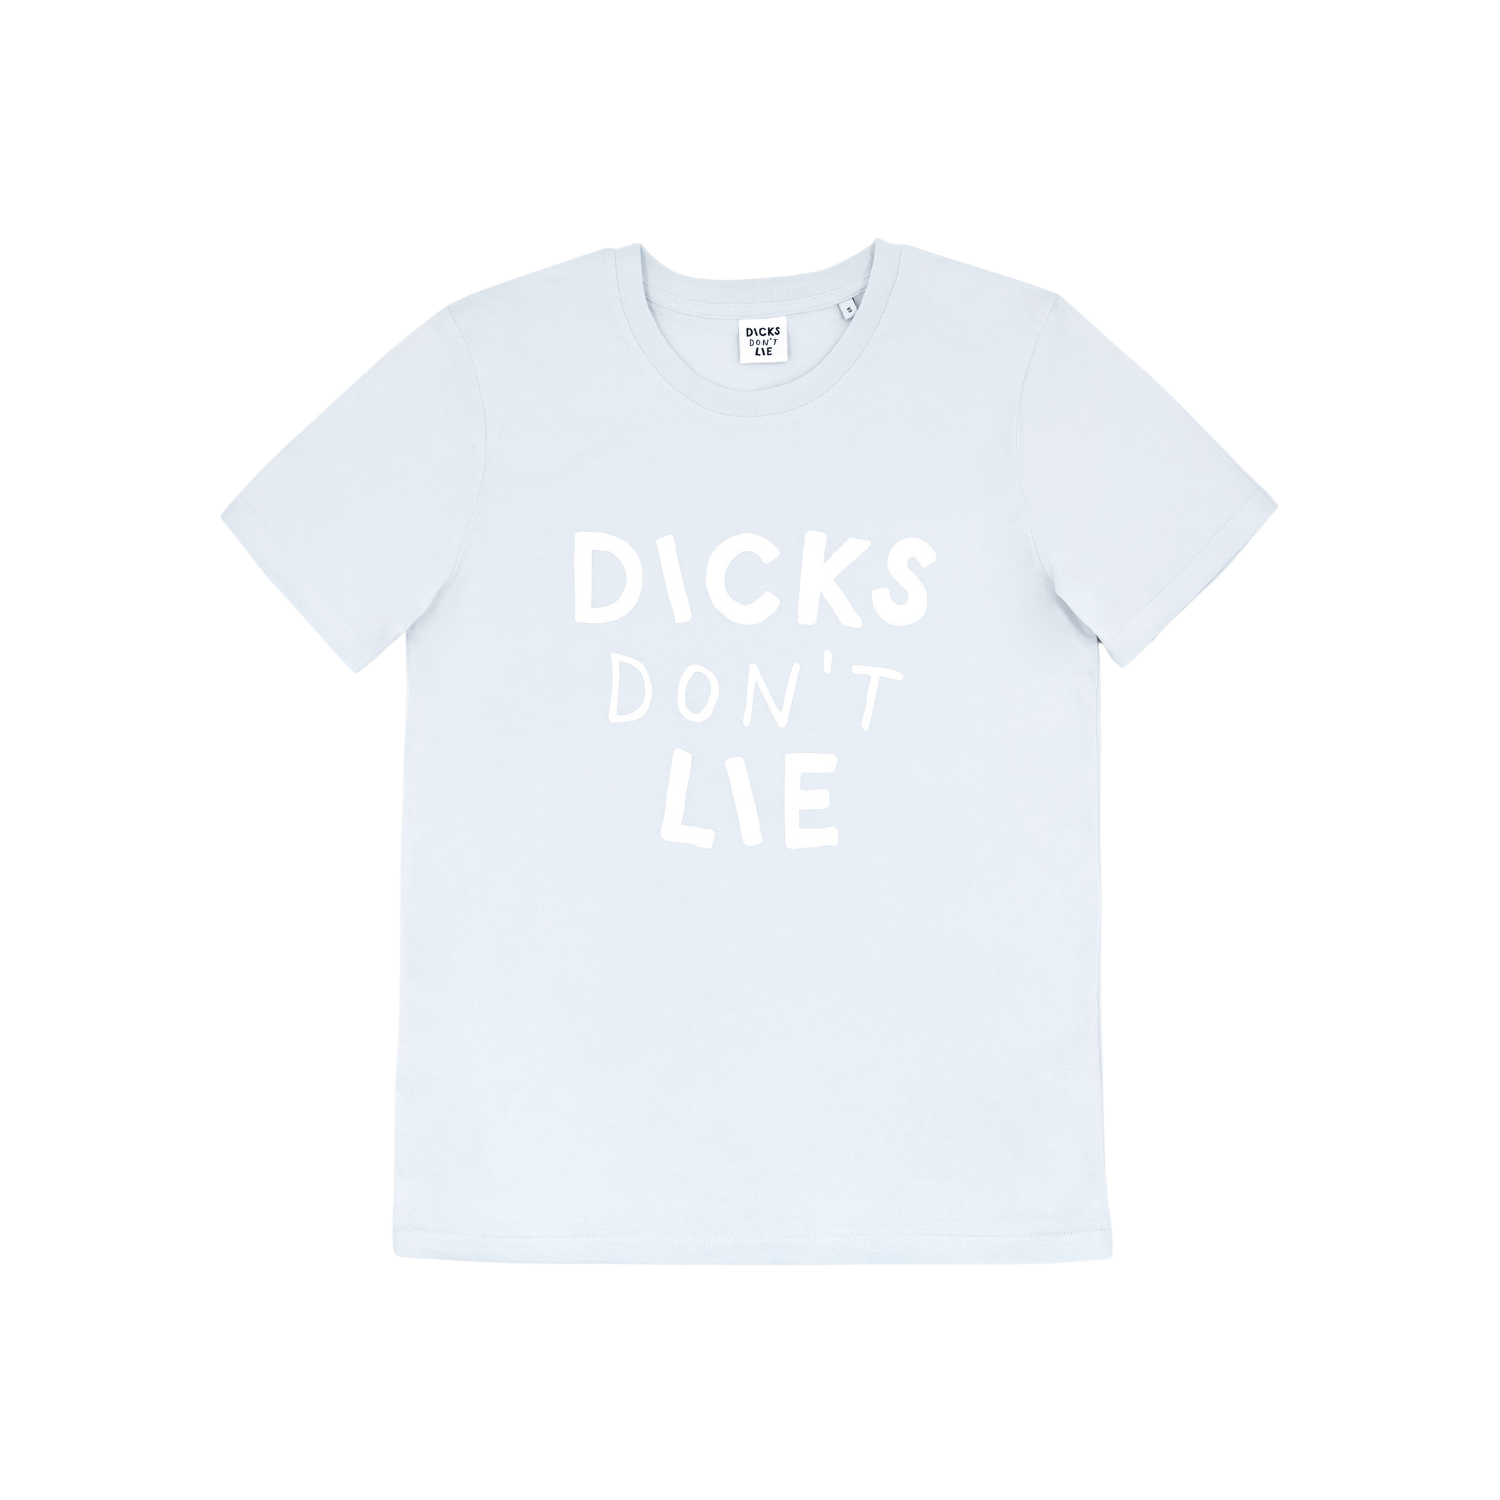 Blauwe Dicks Don't Lie T-shirt van het merk Dicks Don't Lie perfect voor gay mannen en te koop bij Flavourez.